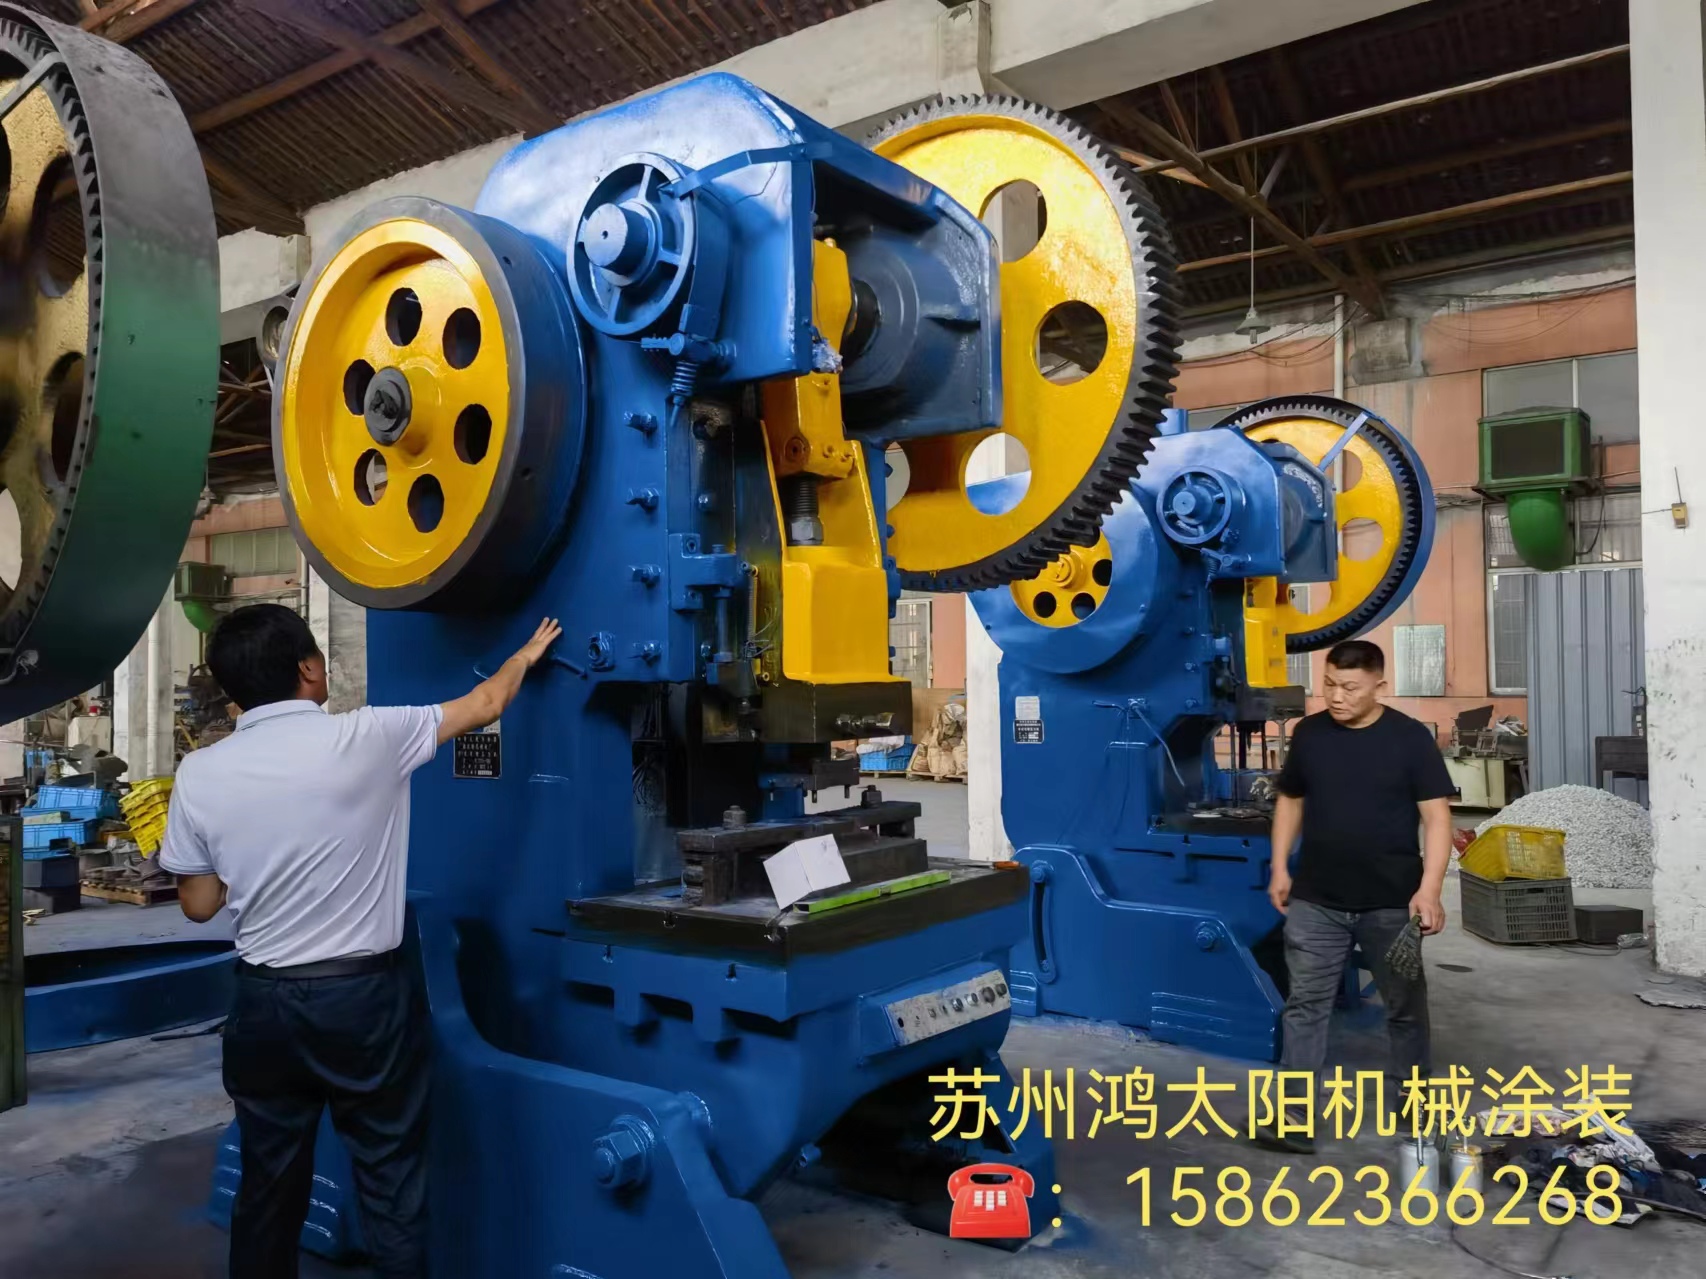 南京机械翻新喷漆  机械喷漆  机械喷漆  设备翻新  机床翻新   苏州机械喷漆苏州机械喷漆